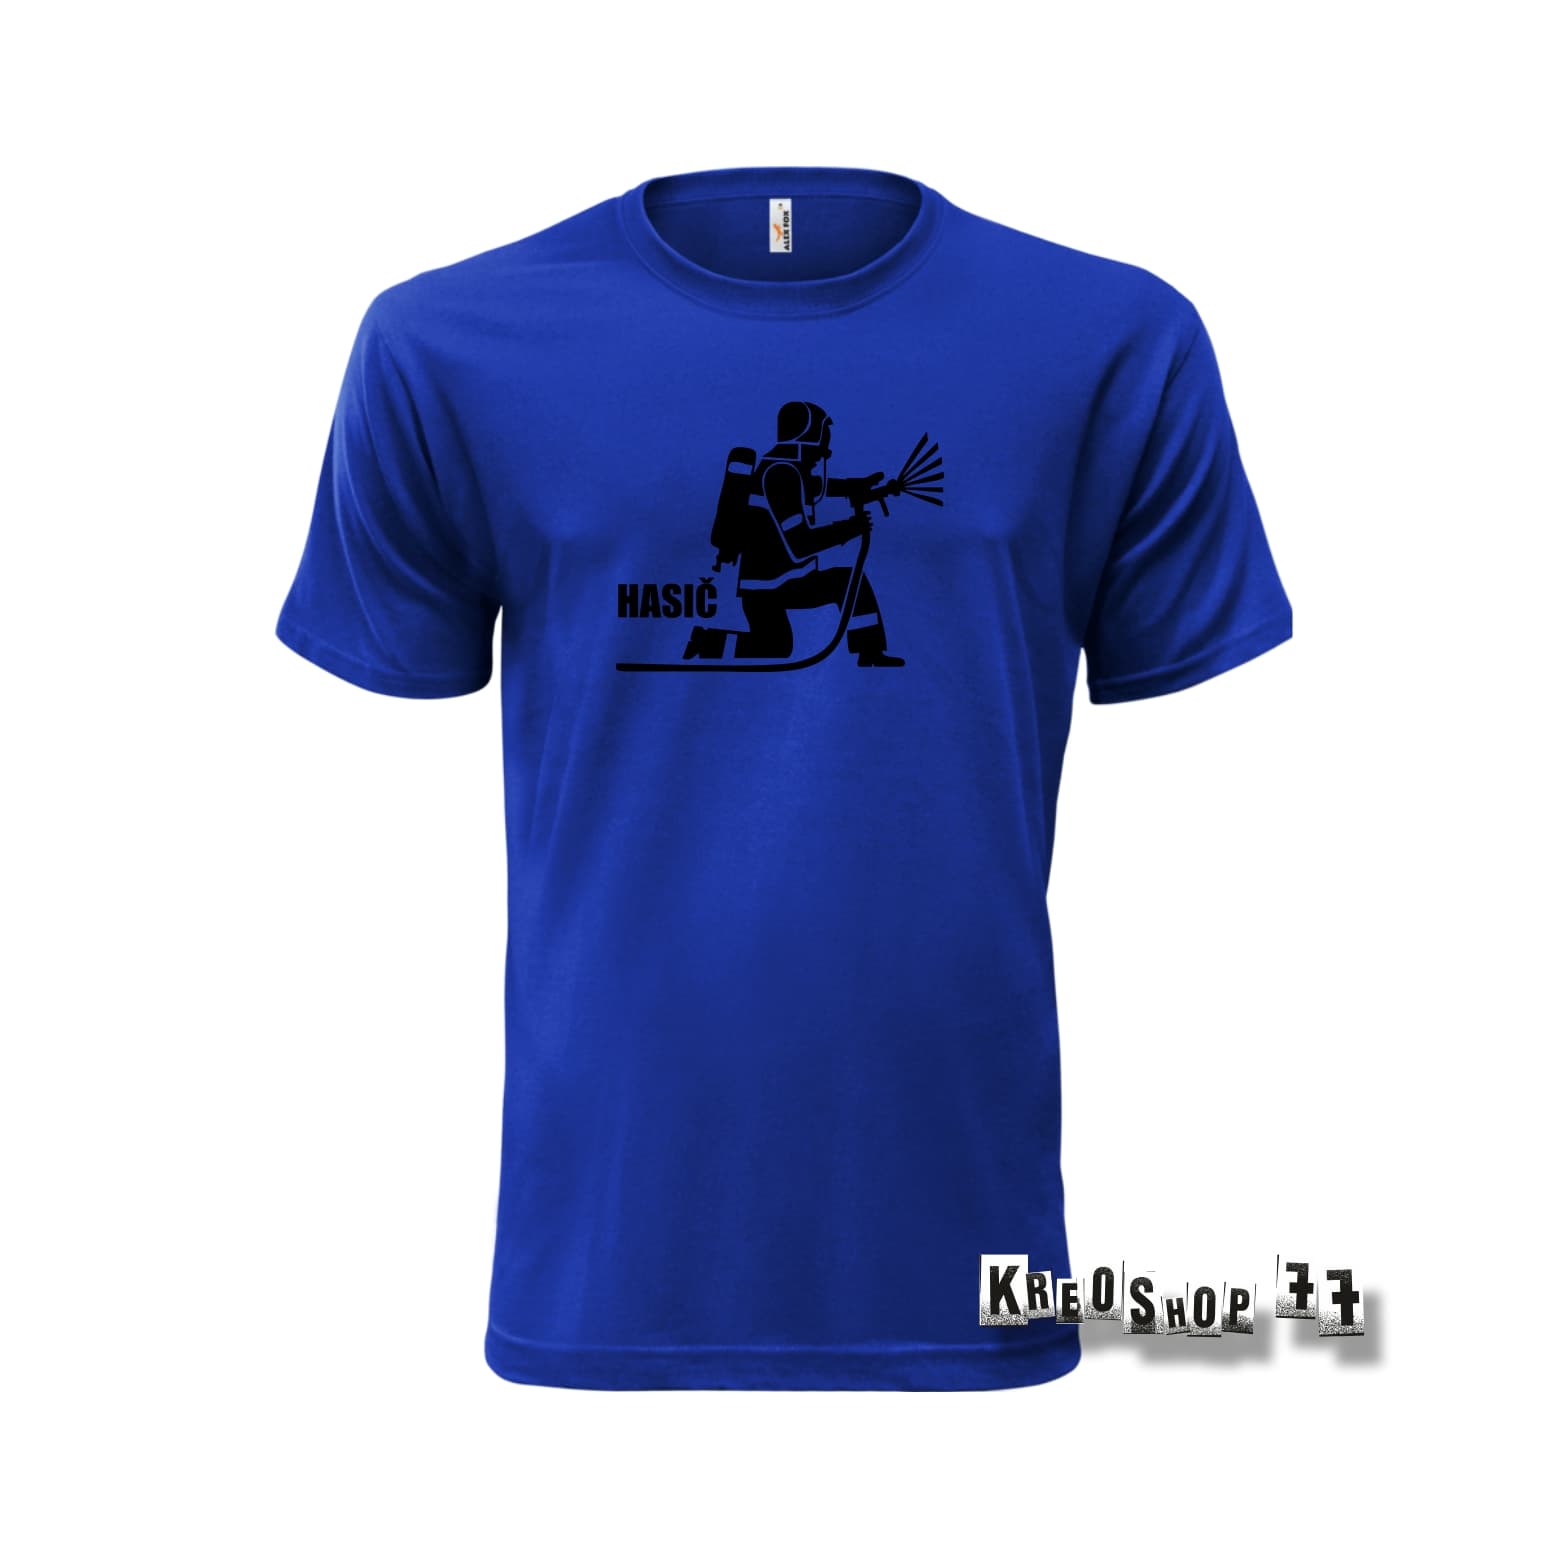 Požiarnické tričko - Hasič B02 - Modré